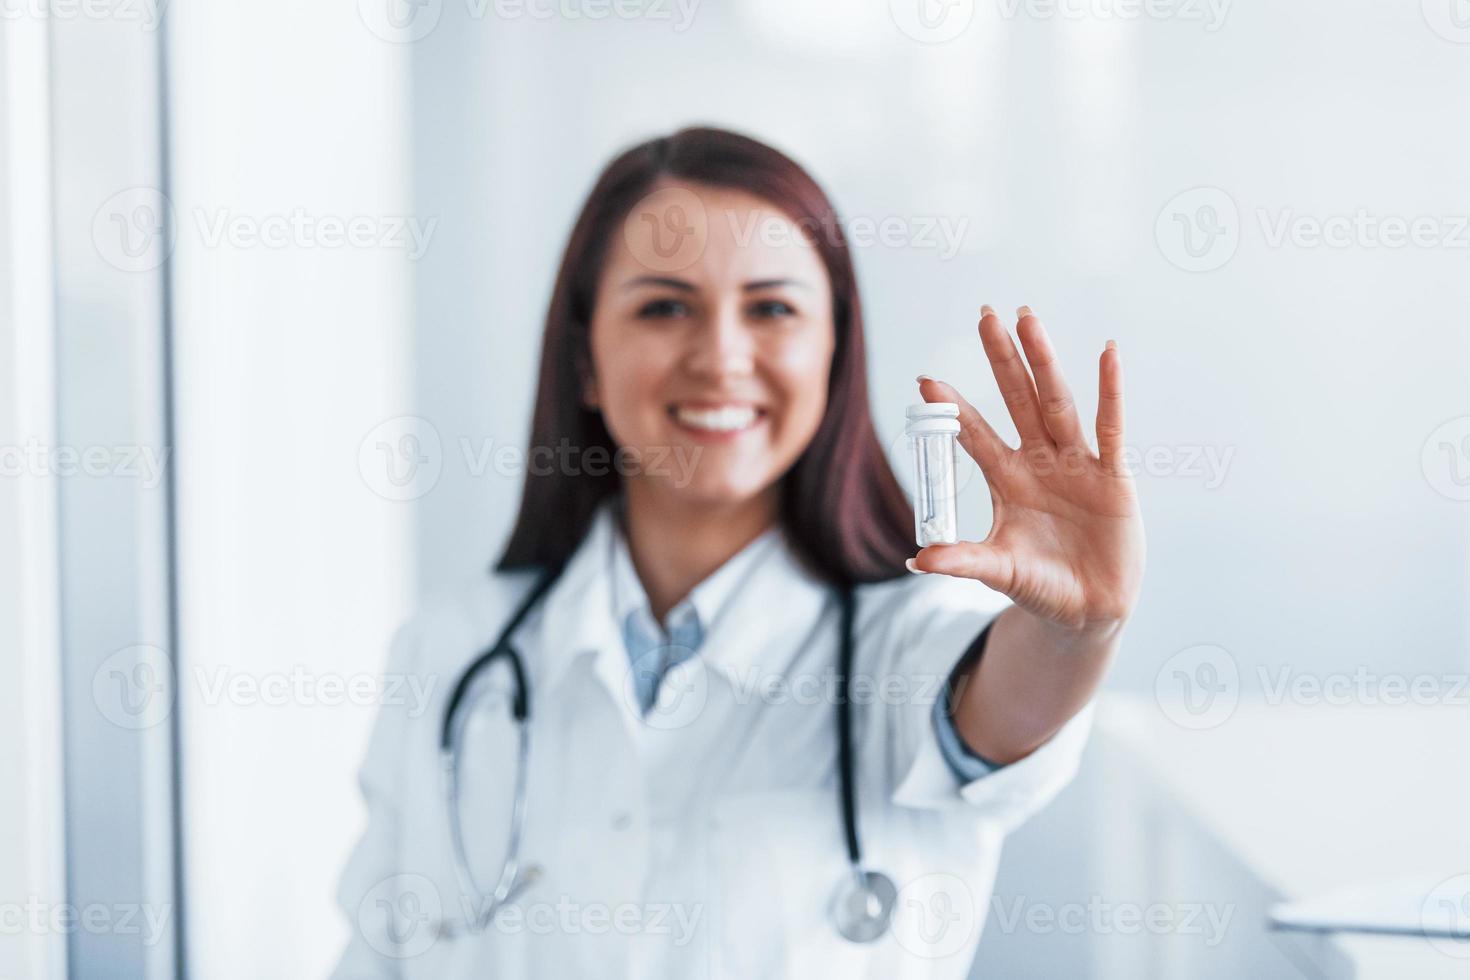 sosteniendo drogas en la mano. joven enfermera en el interior de una clínica moderna. concepción de la salud foto